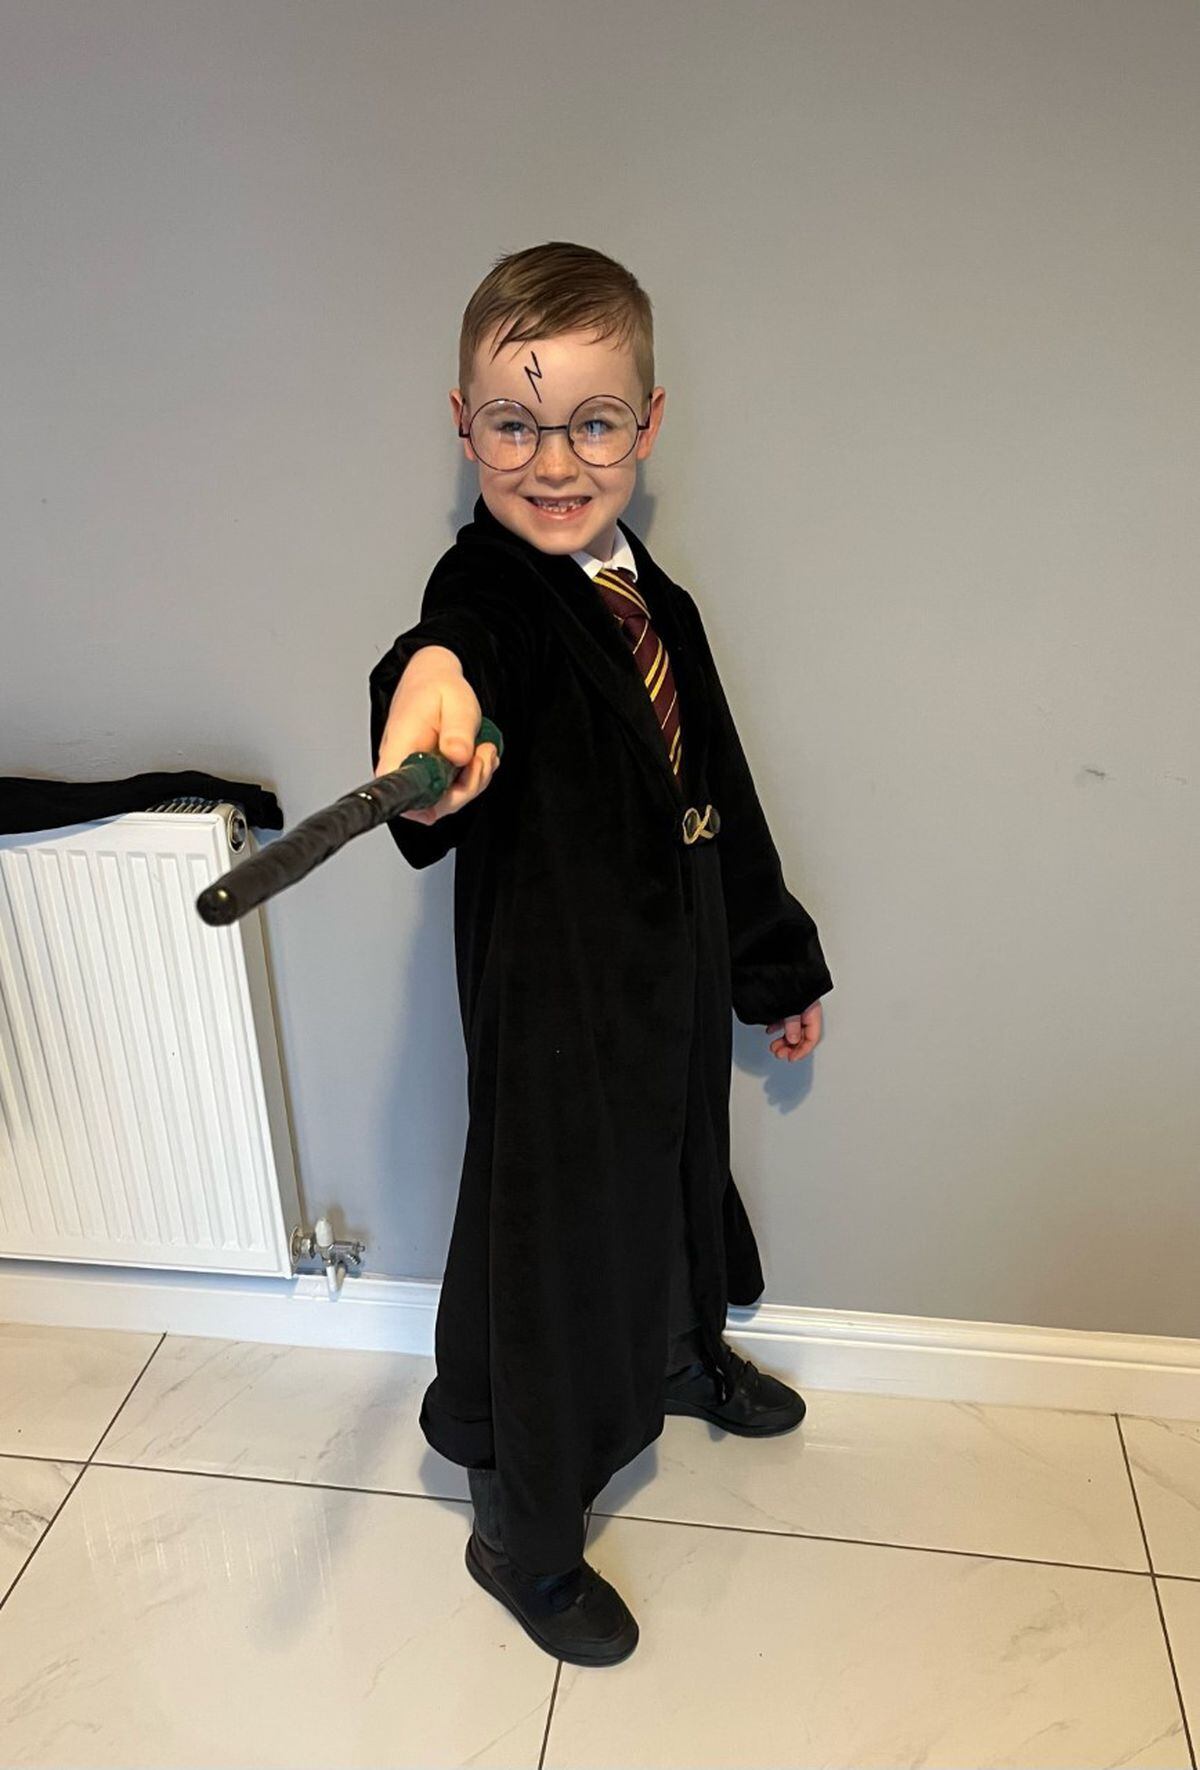 Heath Smith as Harry Potter